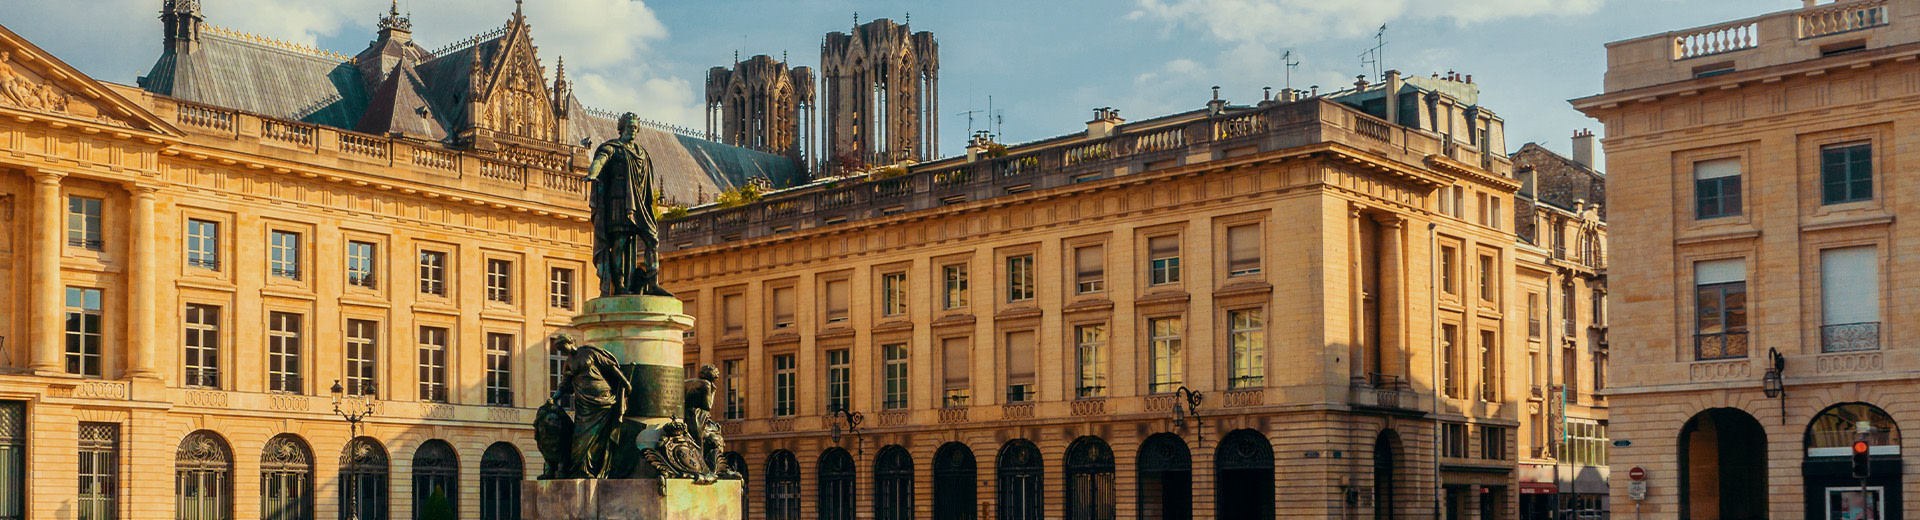 Una imagen de Place Royale, una plaza en Reims. En primer plano se encuentra una estatua de bronce de Louis XV. Las torres gemelas de Cathédale Notre-Dame son visibles por encima de los edificios en el fondo.